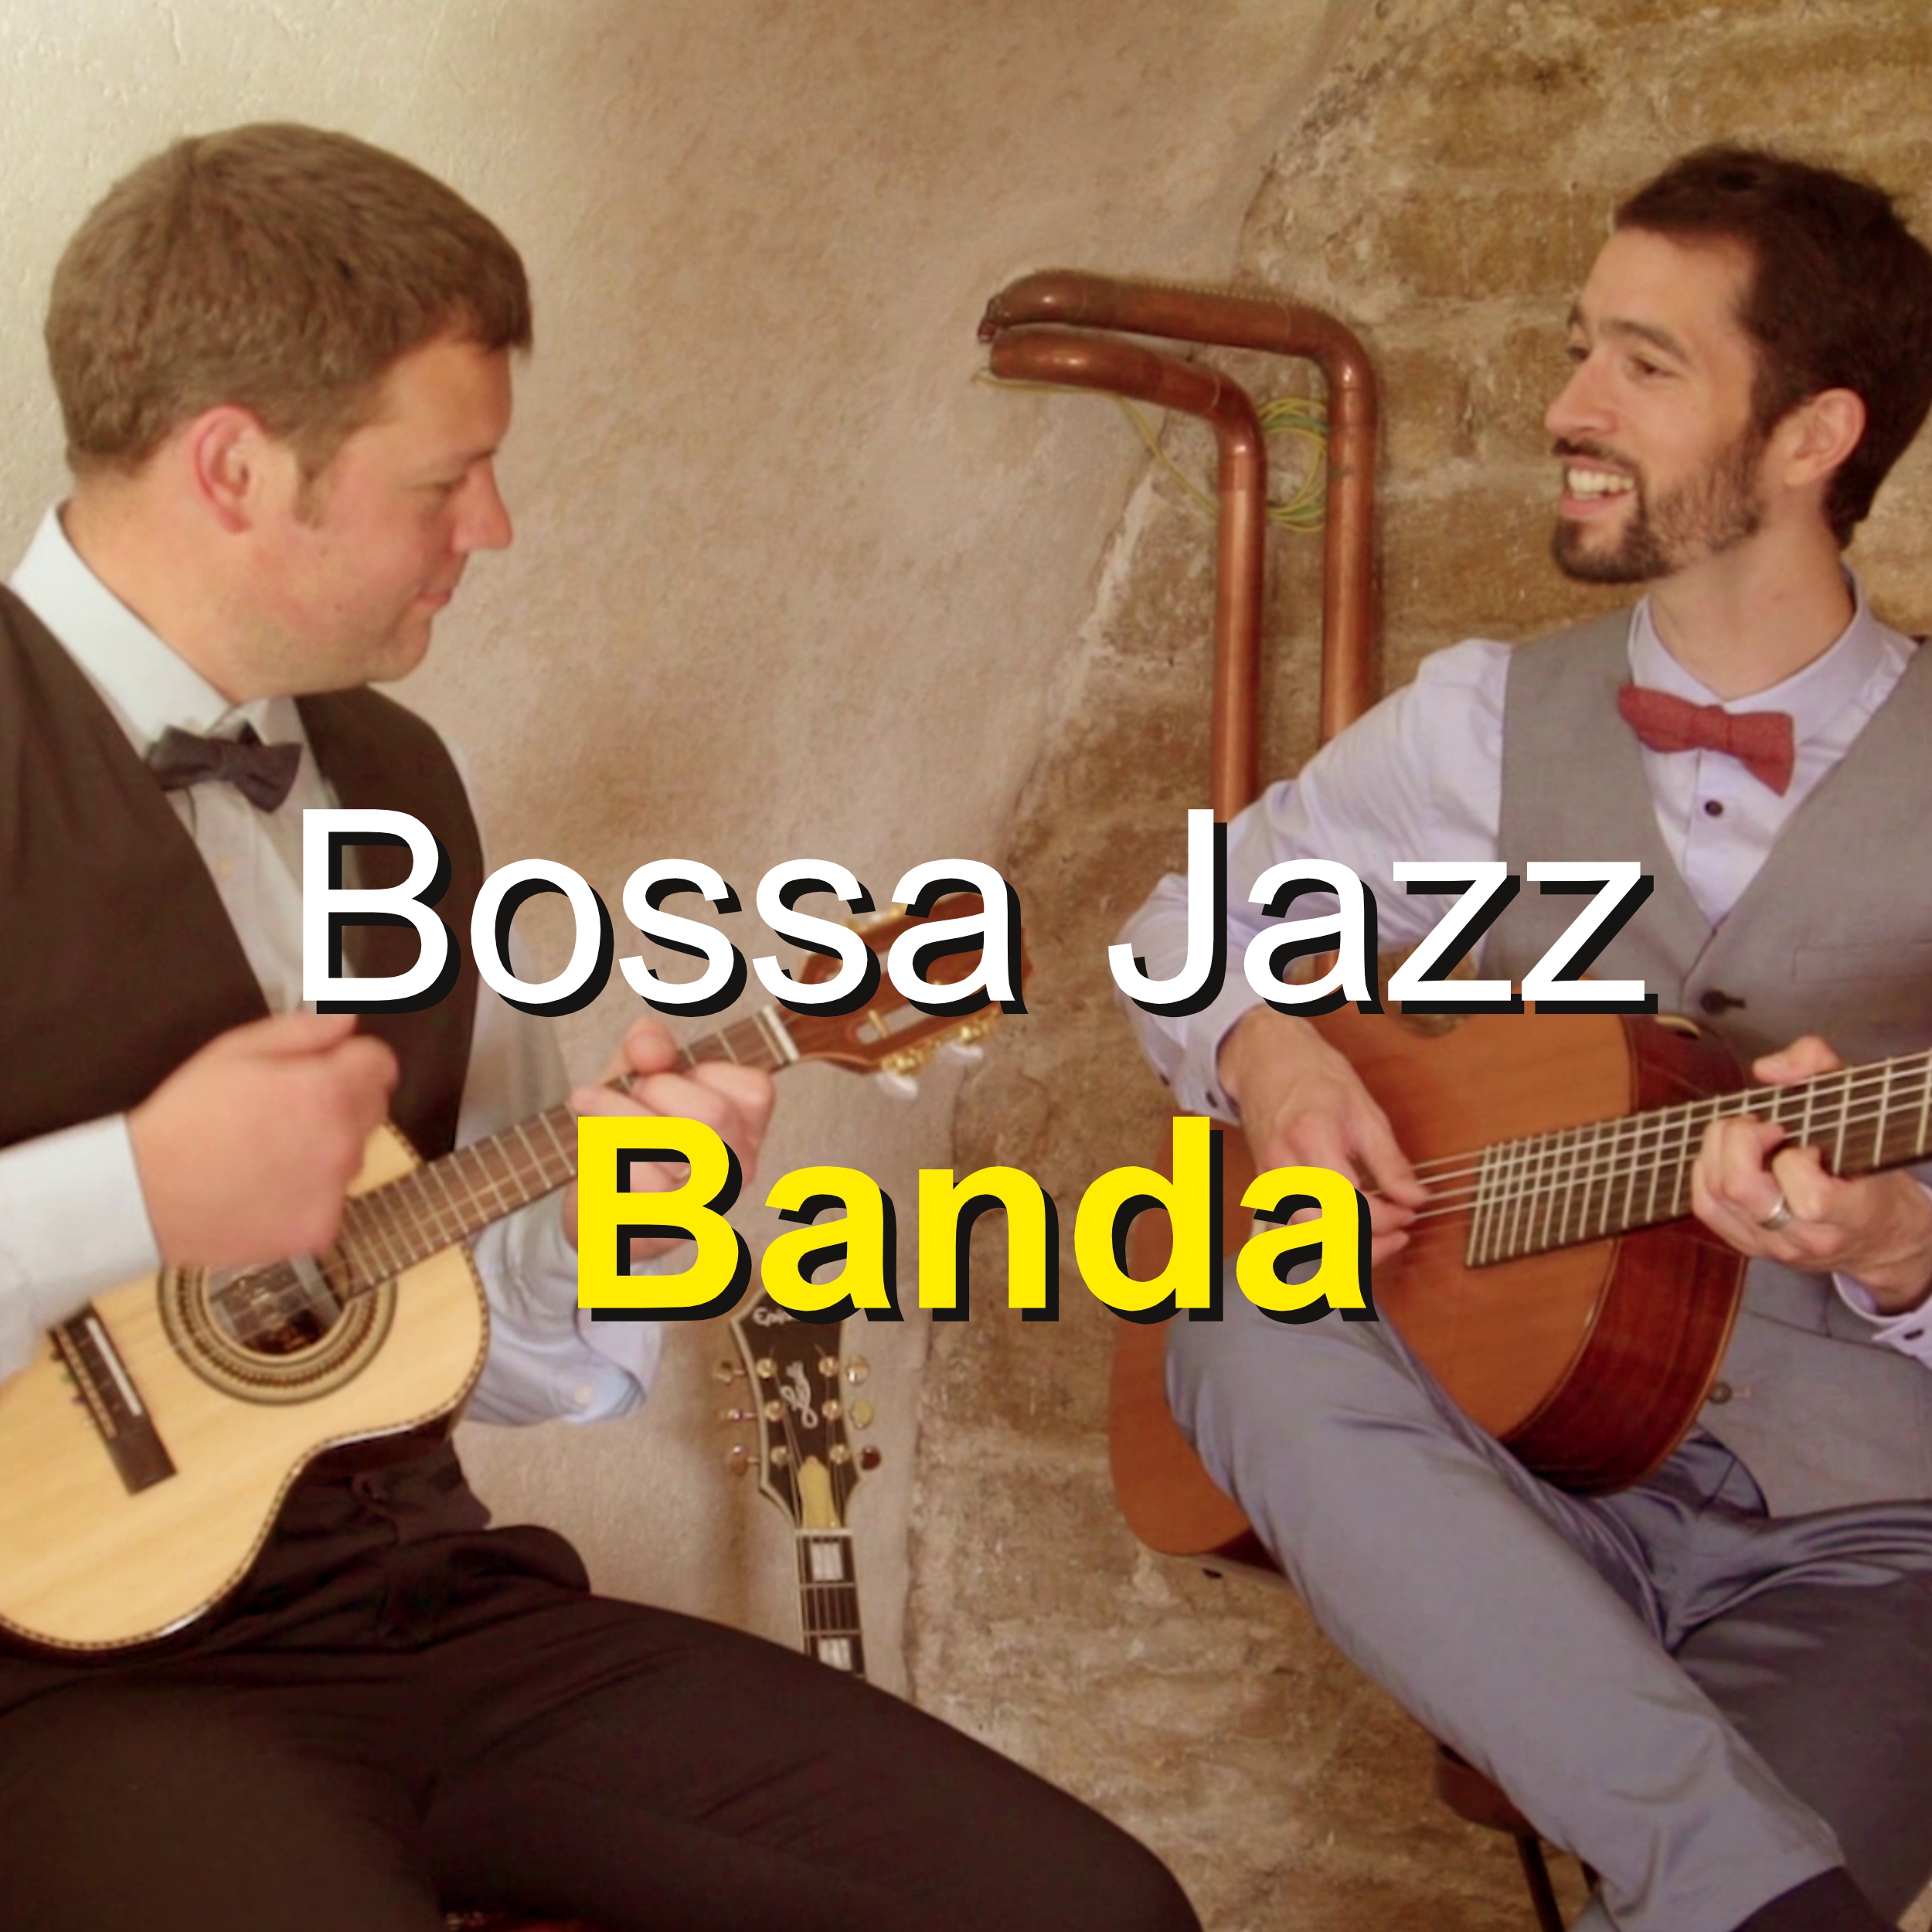 Orchestre Bossa Nova, Jazz et chanson française